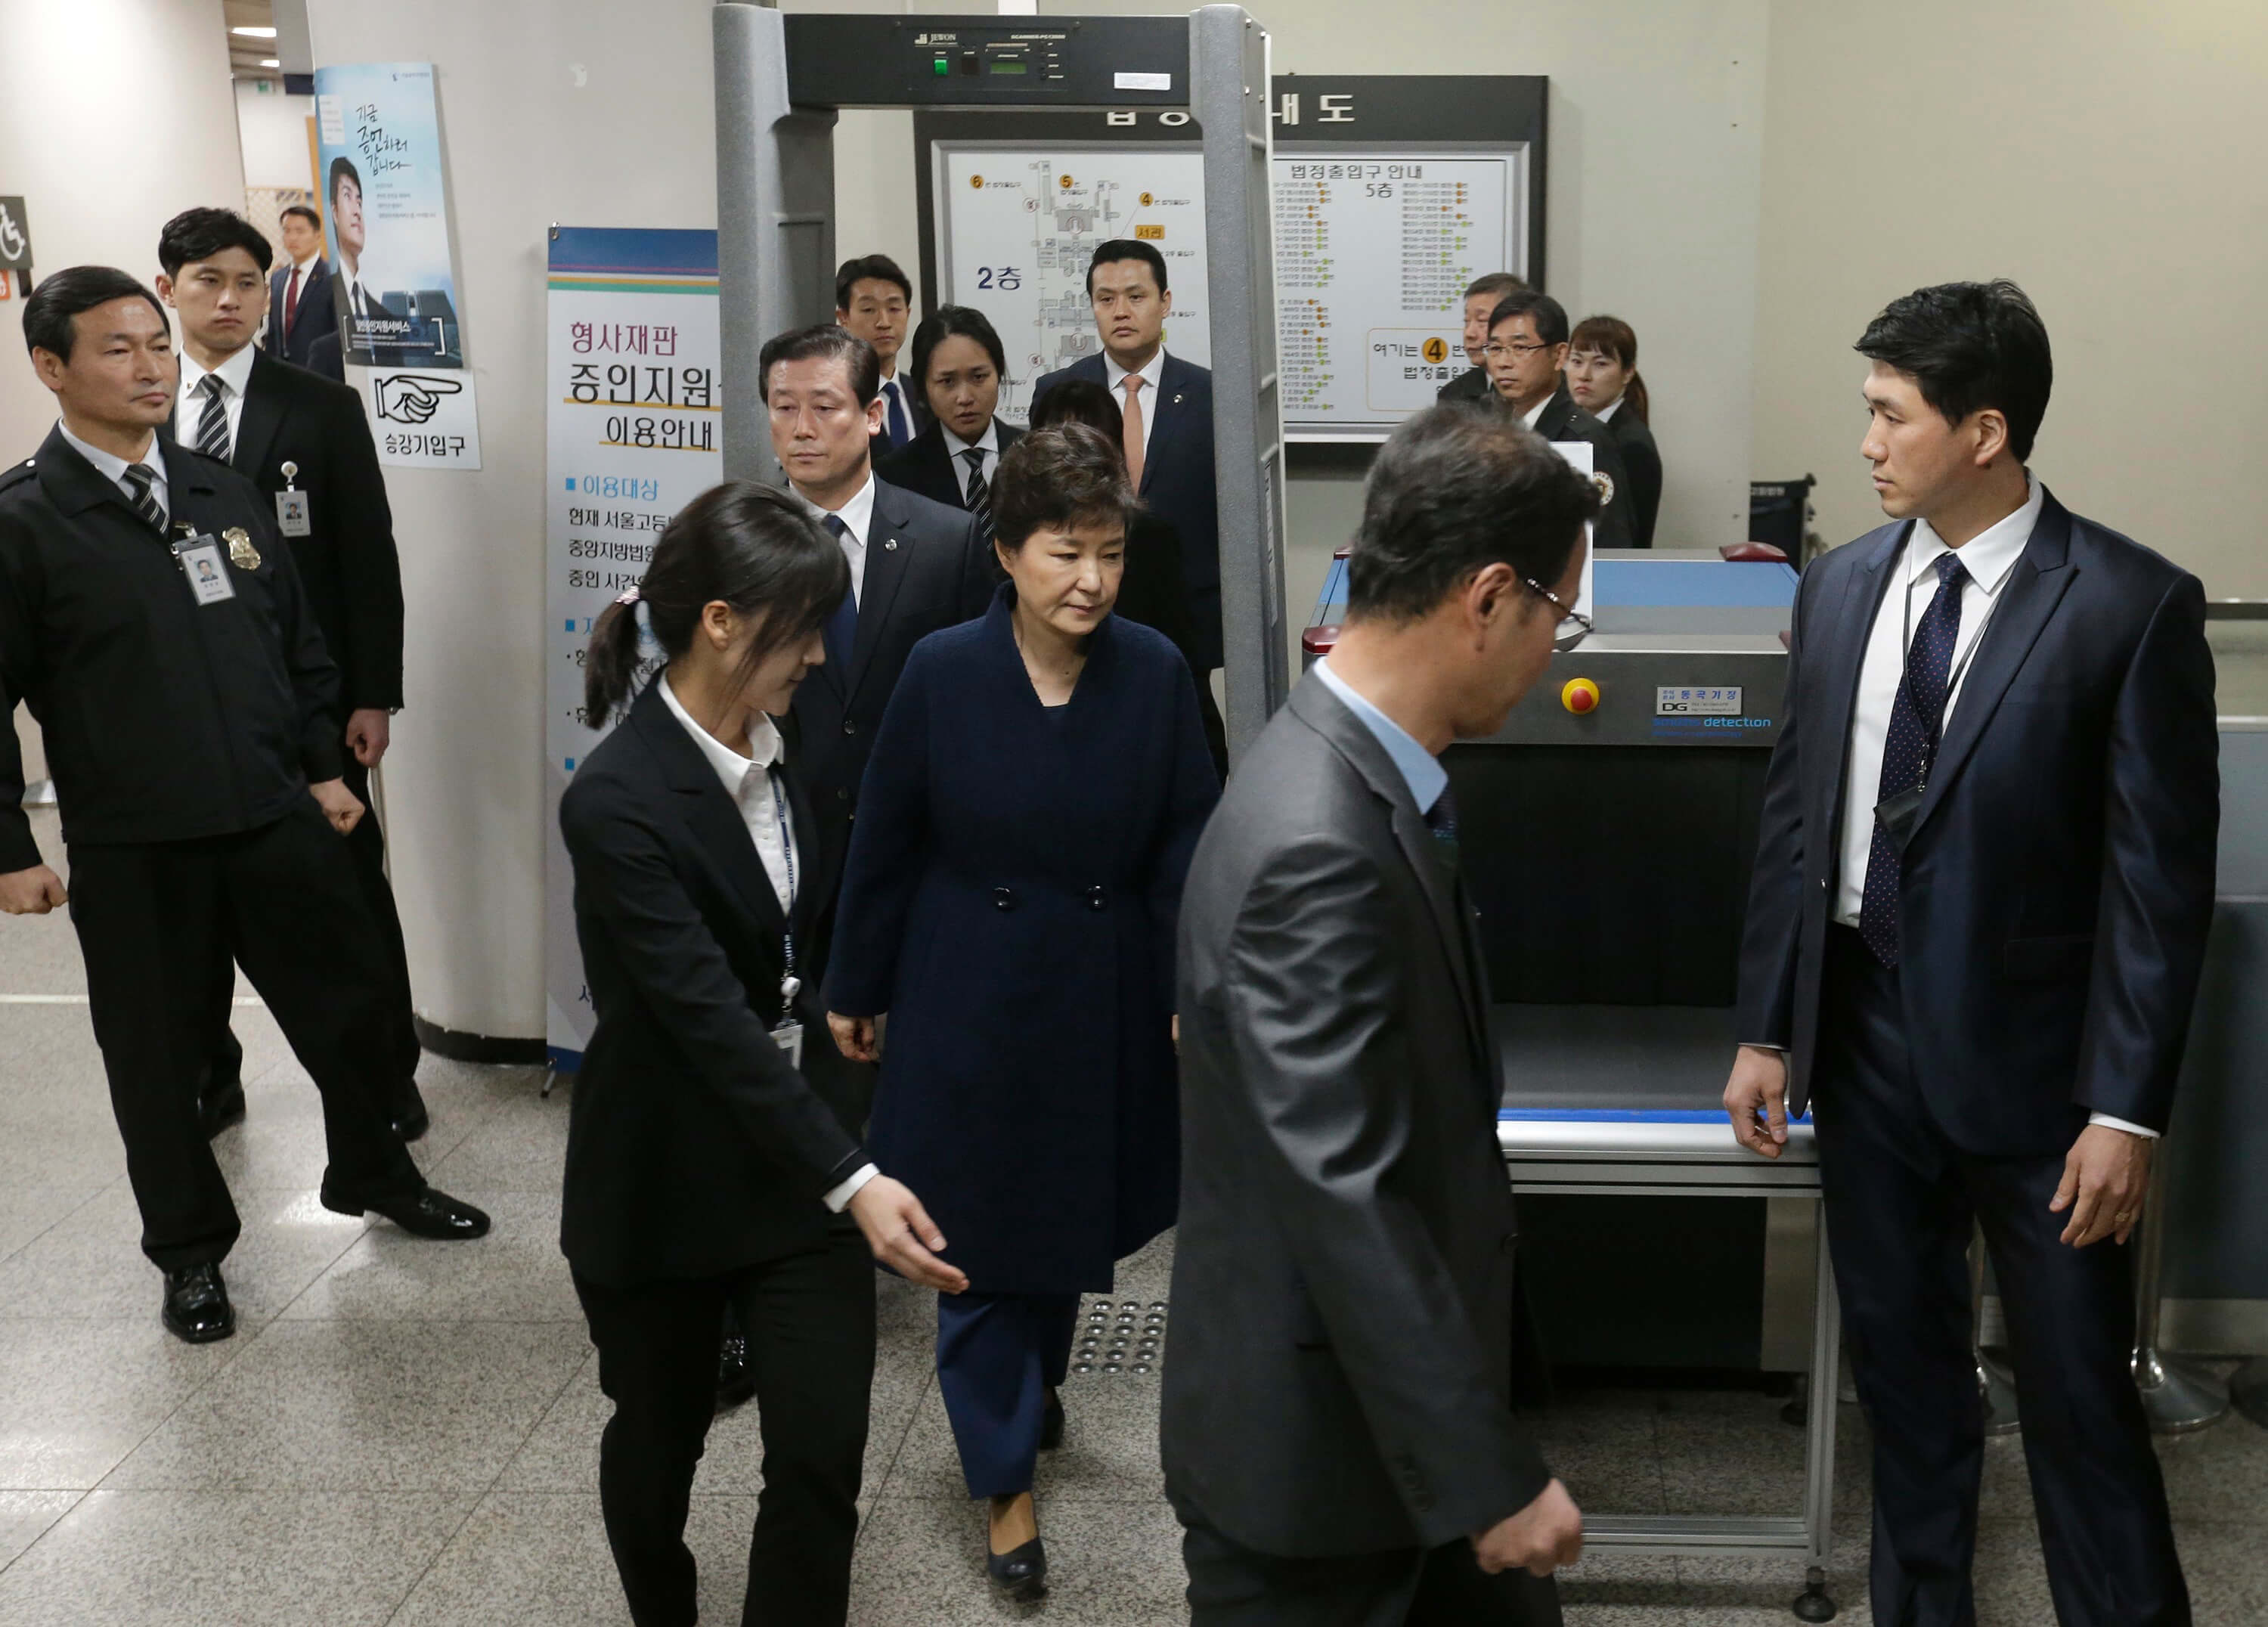 La expresidenta de Corea del Sur, Park Geun-hye, fue destituida por estar vinculada en casos de corrupción.